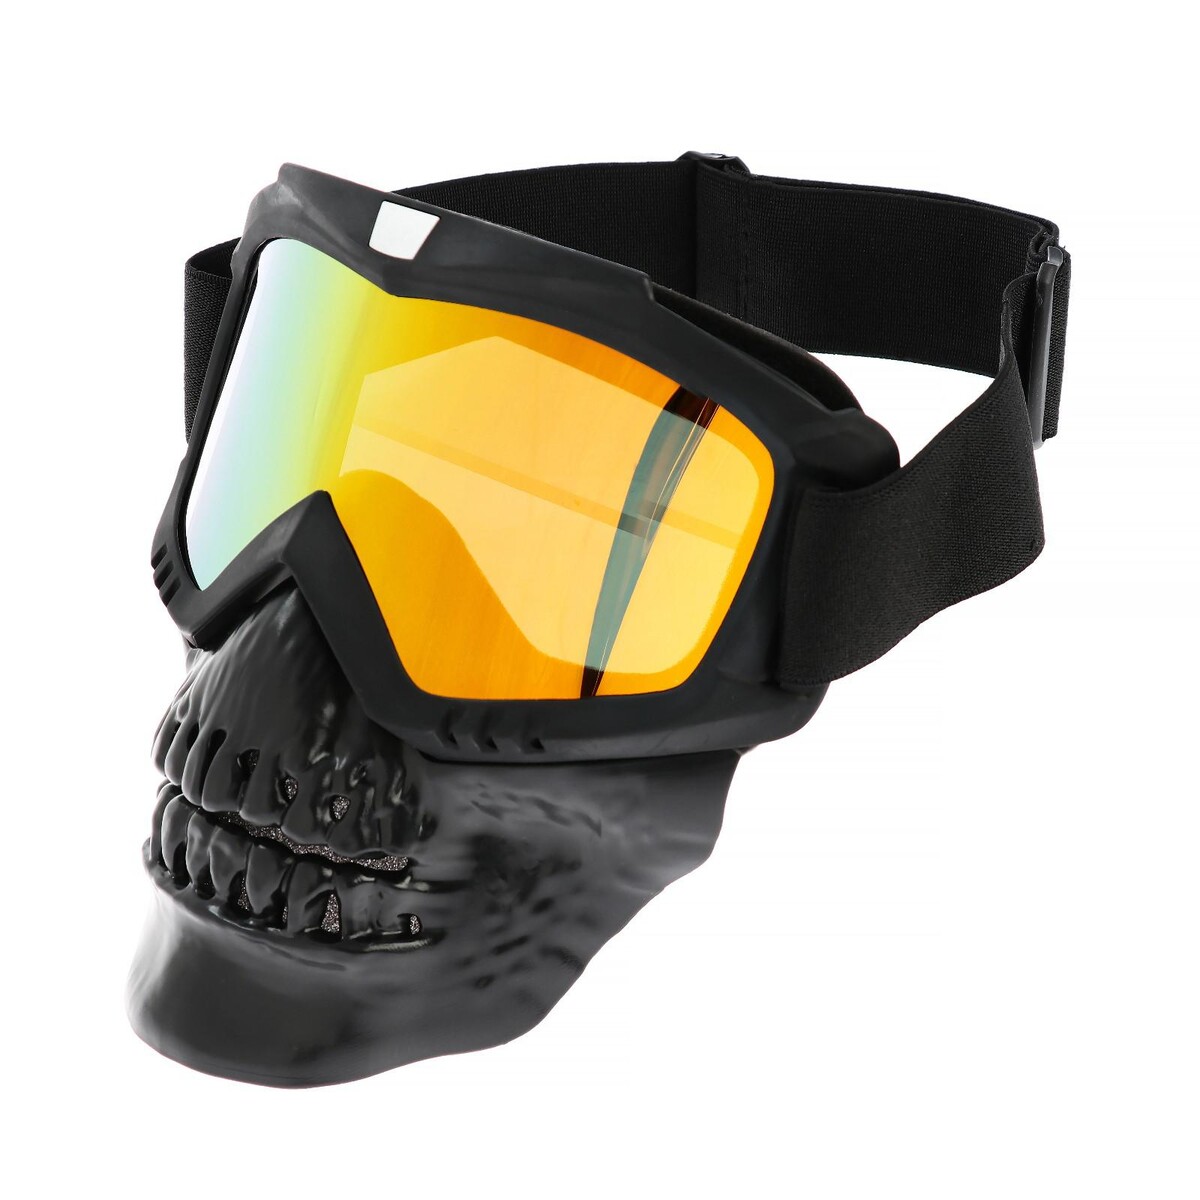 Очки-маска для езды на мототехнике, разборные, визор оранжевый, цвет черный очки маска для езды на мототехнике разборные стекло оранжевый хром